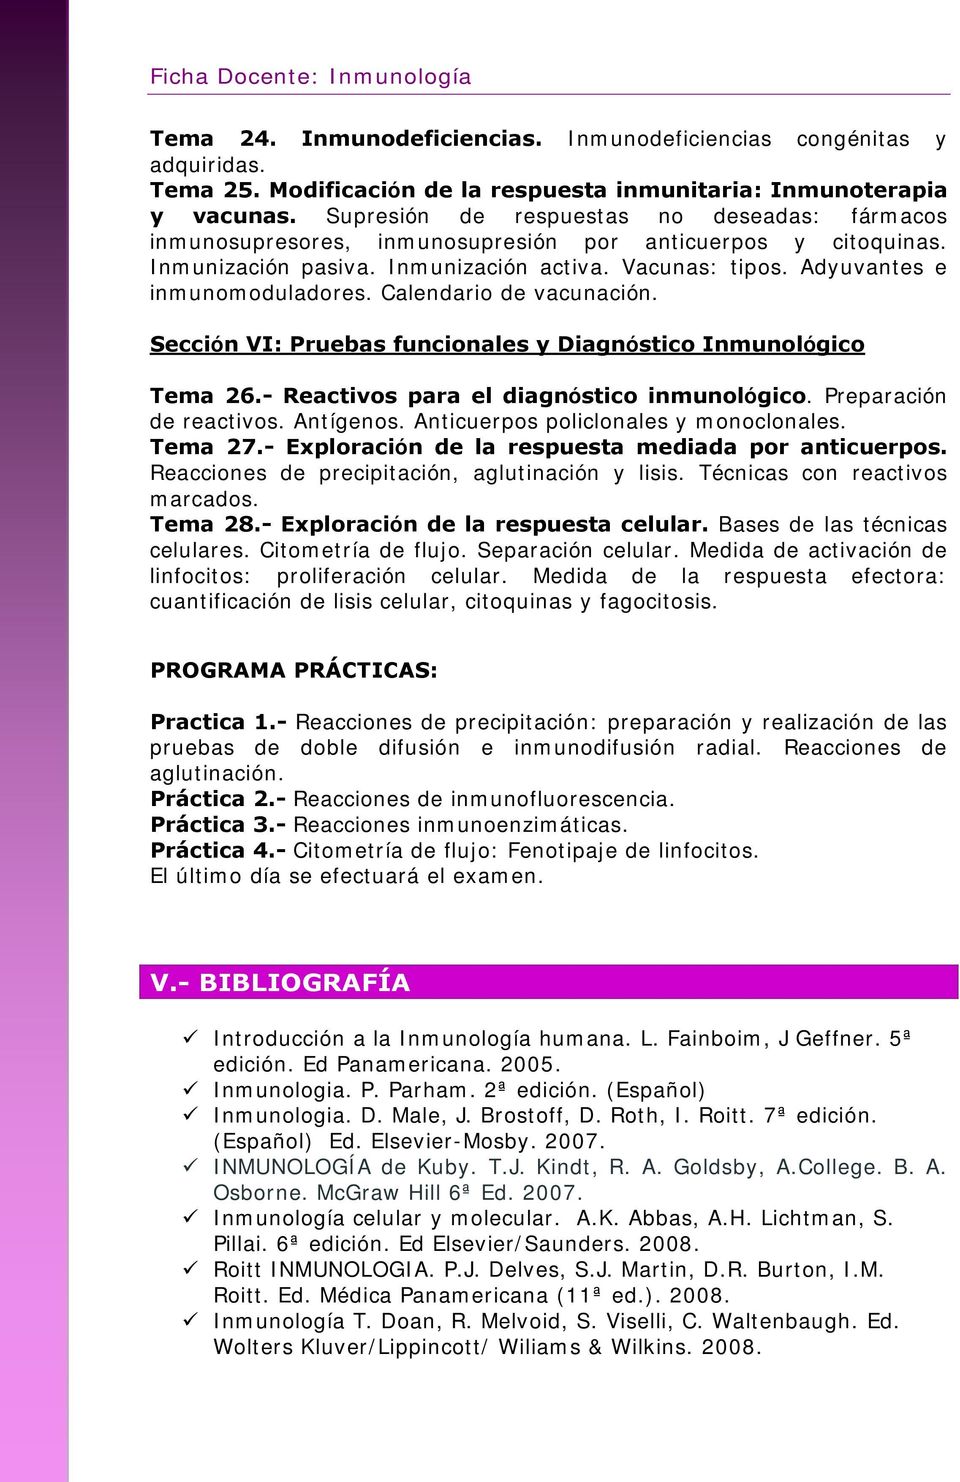 Calendario de vacunación. Sección VI: Pruebas funcionales y Diagnóstico Inmunológico Tema 26.- Reactivos para el diagnóstico inmunológico. Preparación de reactivos. Antígenos.